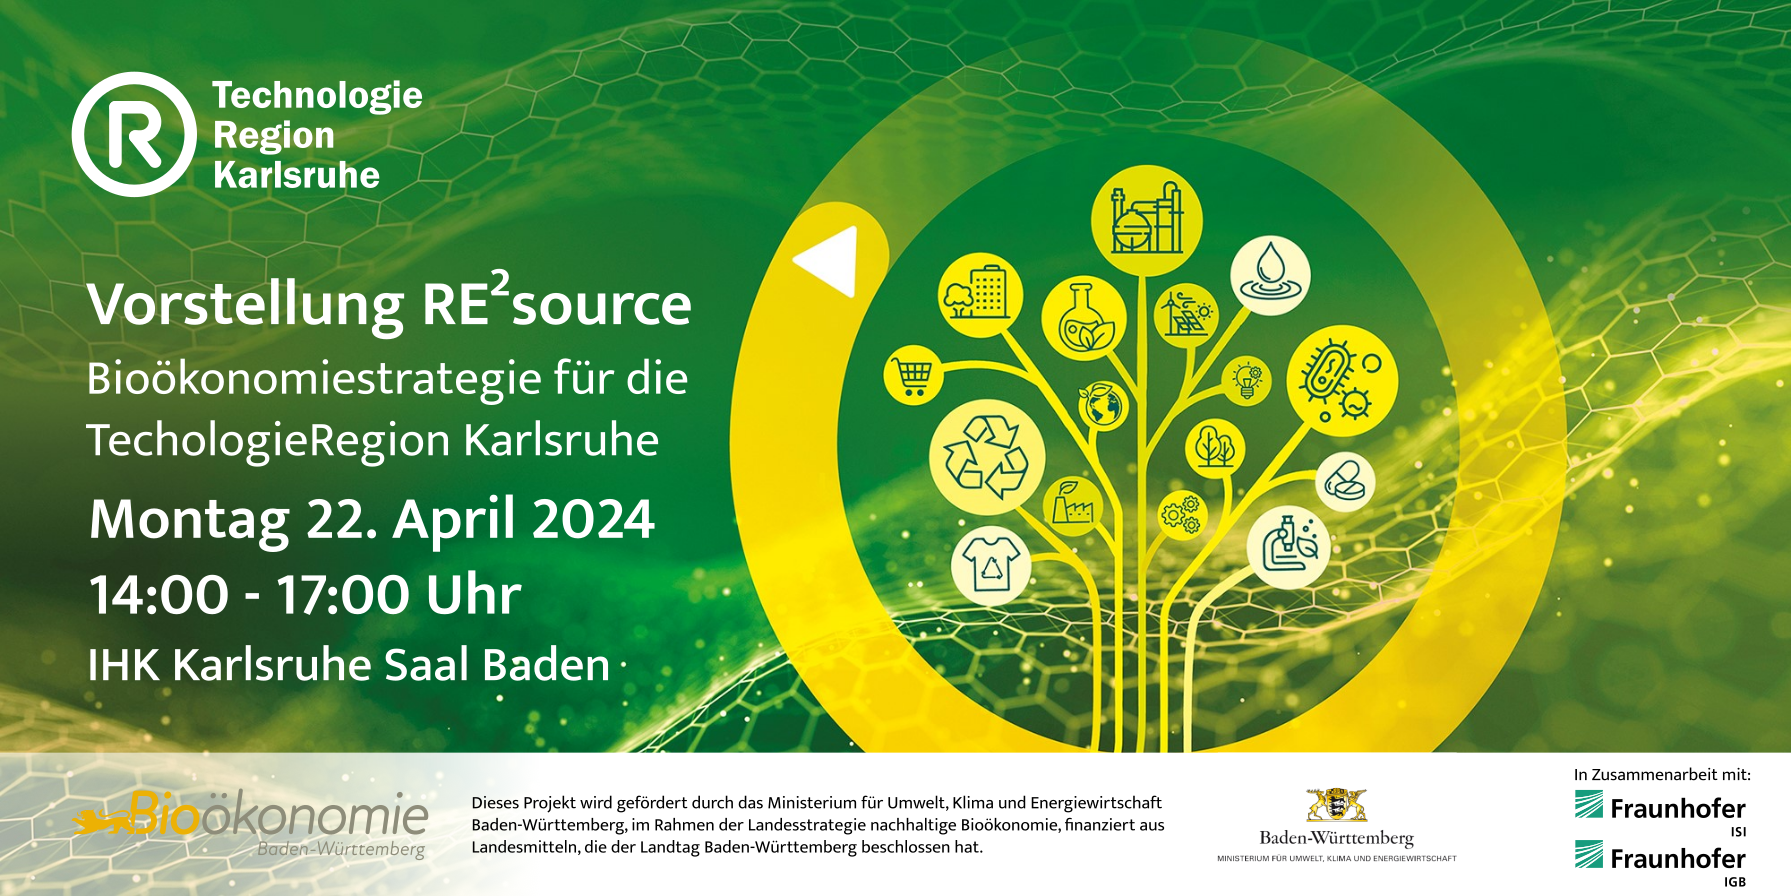 Vorstellung von RE²source - Bioökonomiestrategie für die TechnologieRegion Karlsruhe am Montag, 2.. April 2024 bei der IHK Karlsruhe